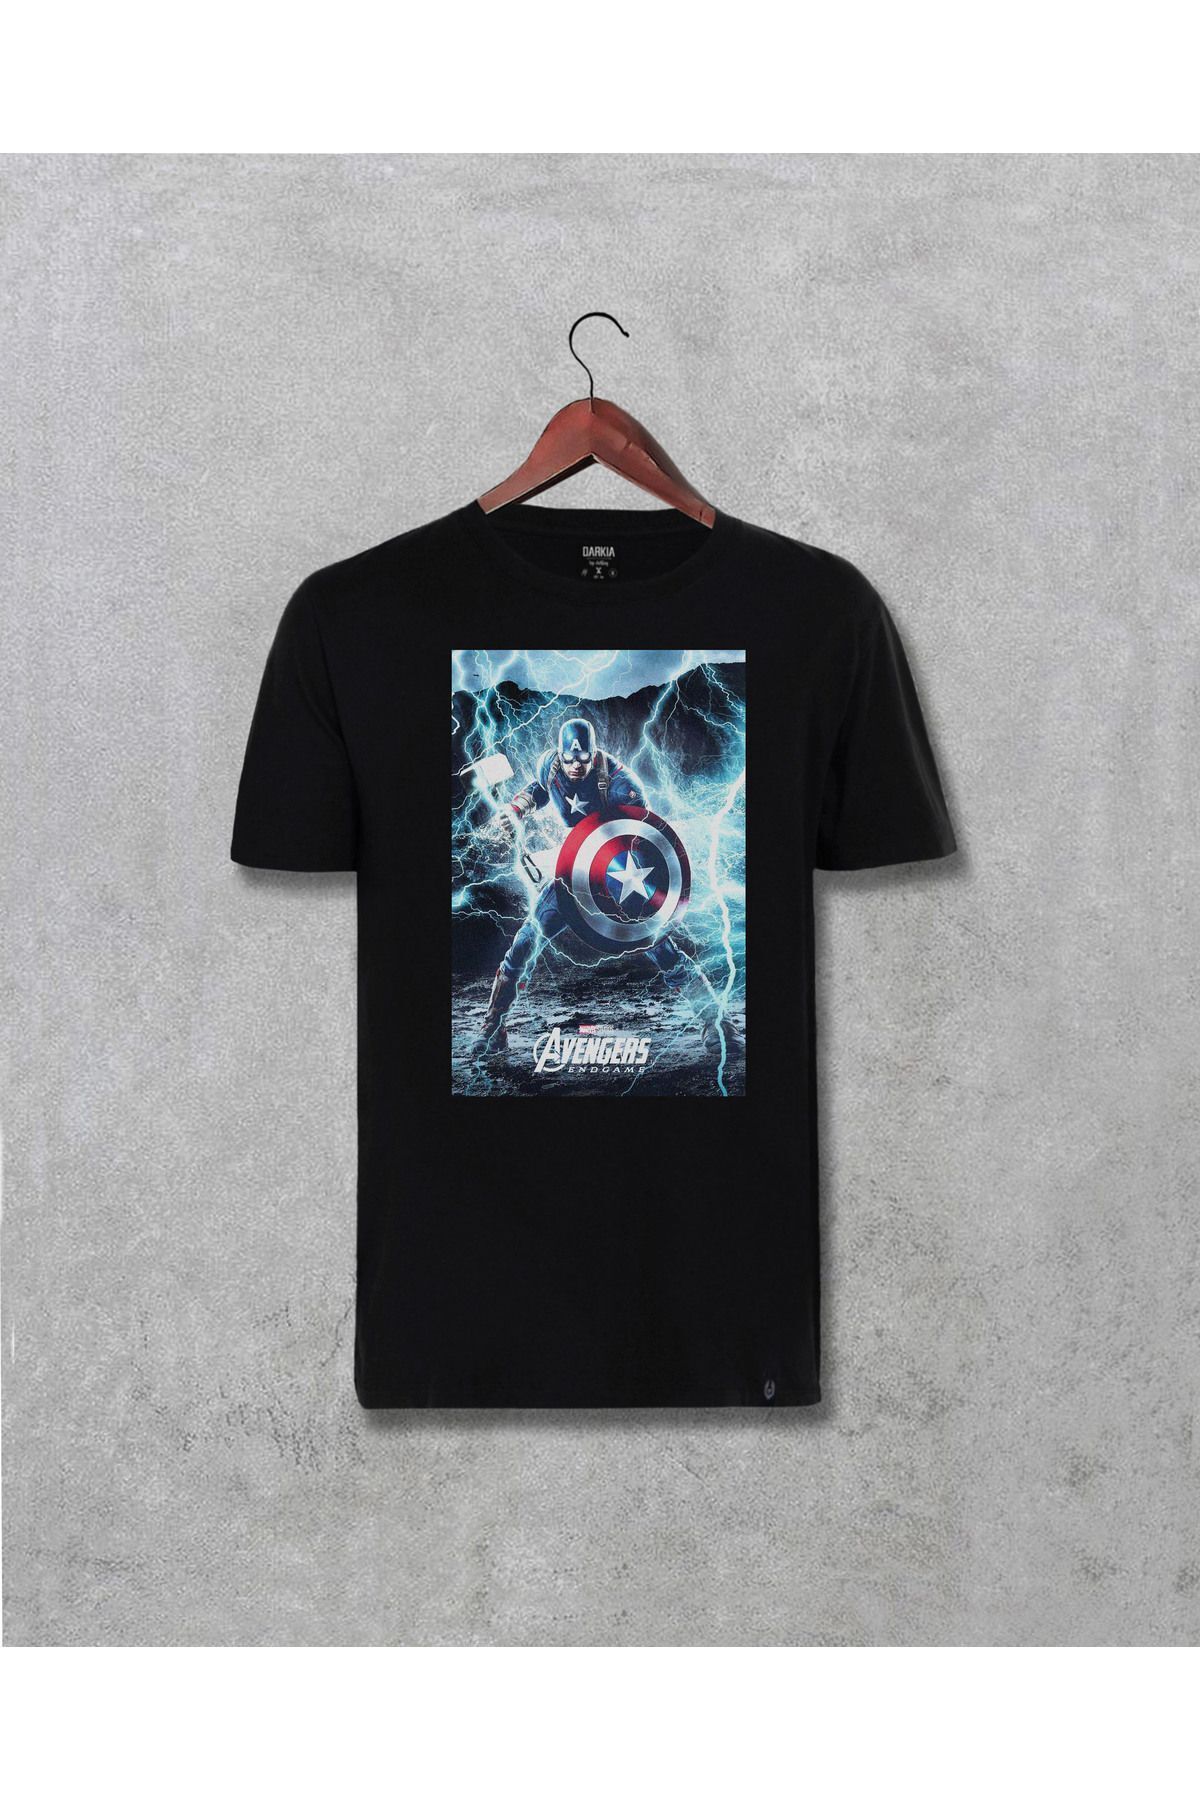 CB MAN COLLECTİON Kaptan Captain America Endgame Tasarım Baskılı Unisex Tişört